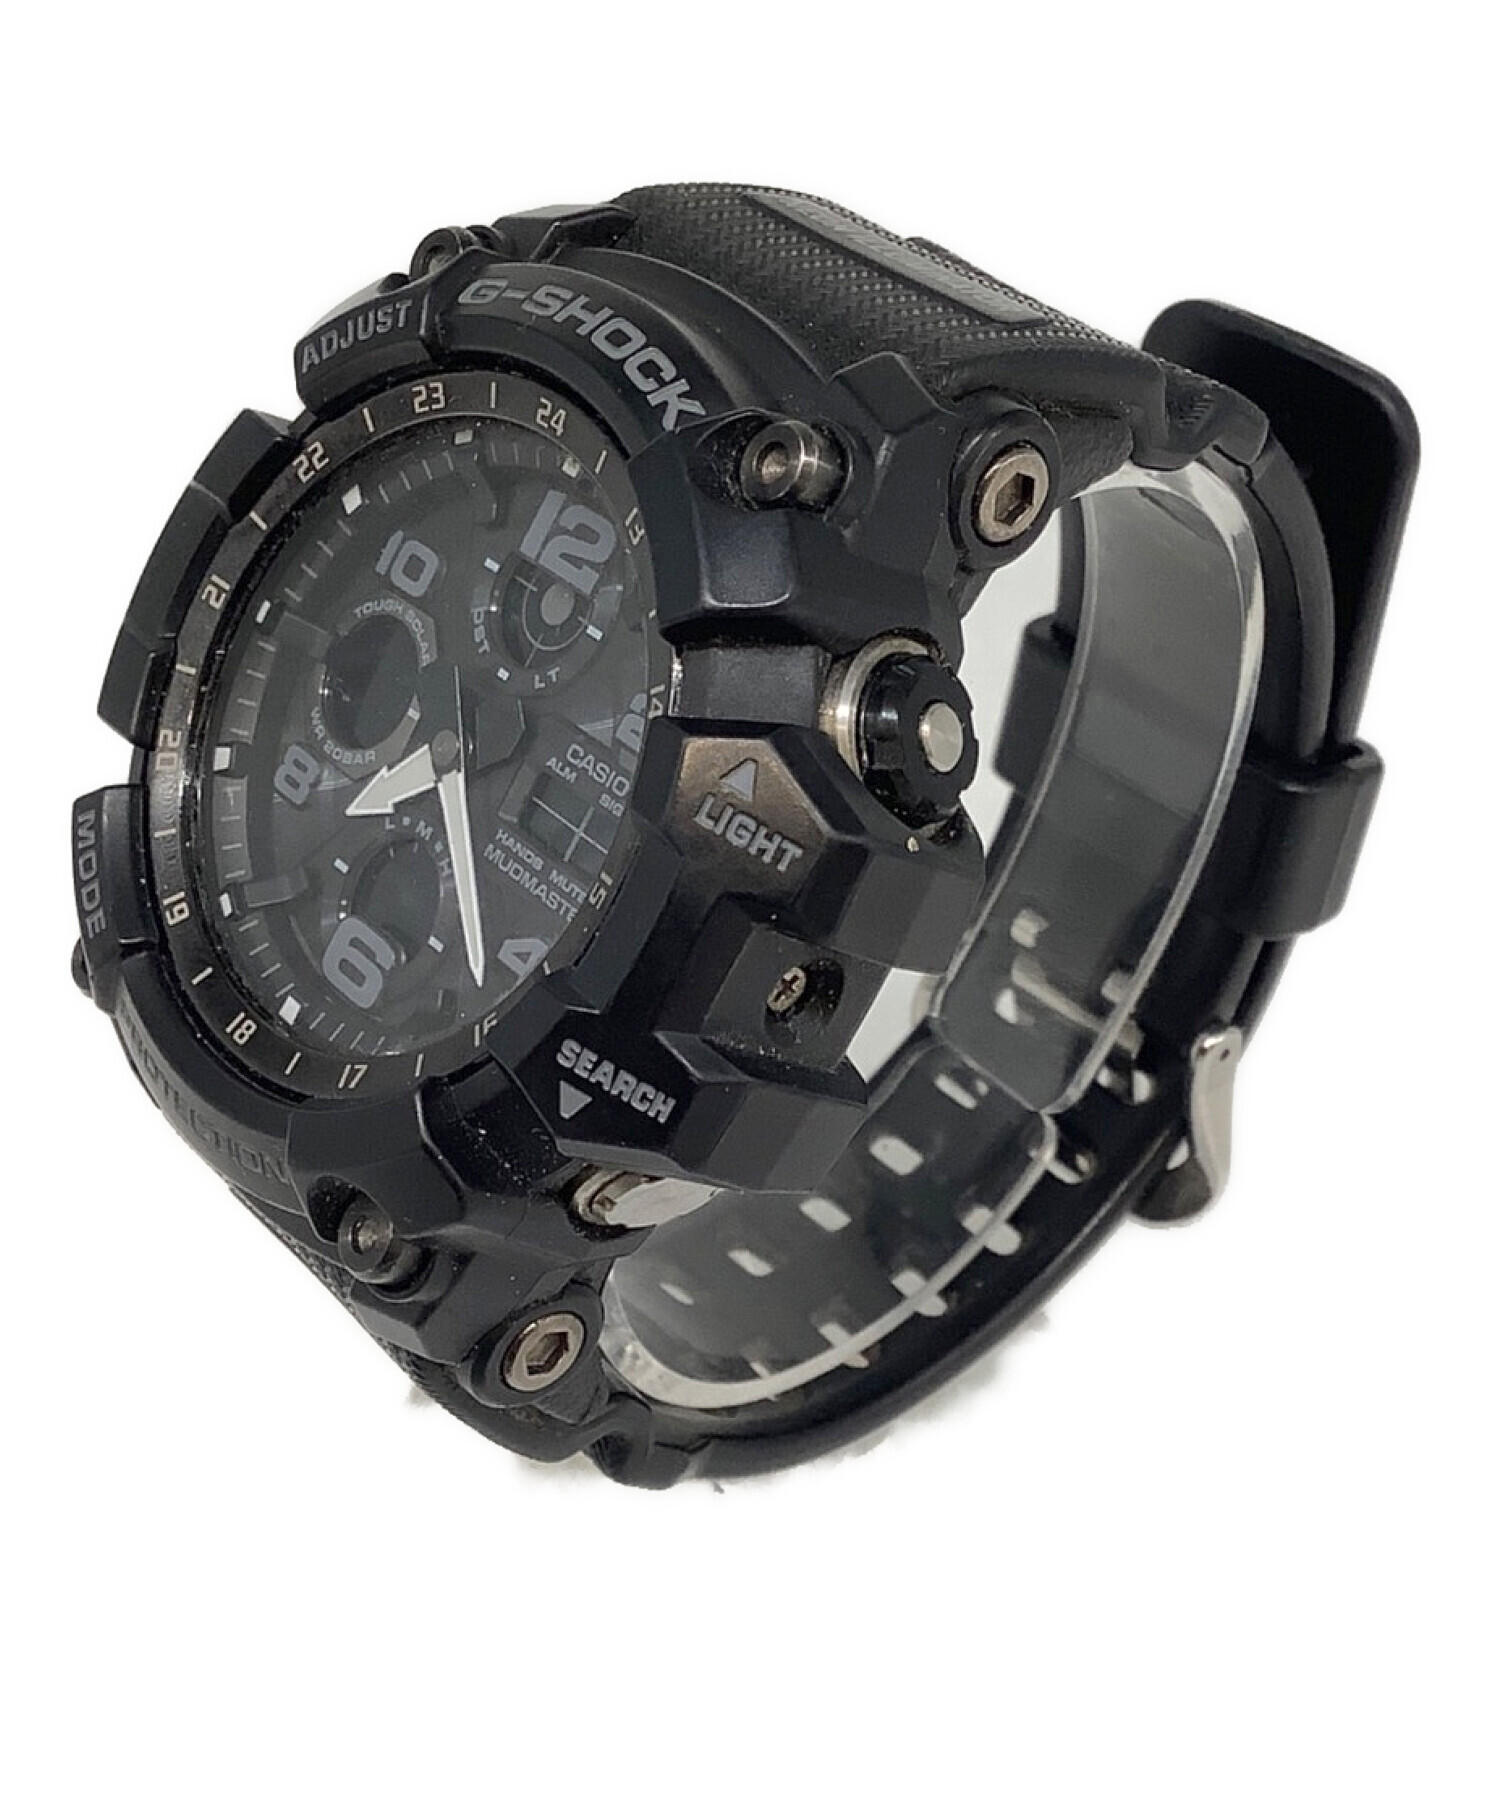 やや傷や汚れあり カシオ G-SHOCK GWG-100 マッドマスター メンズ腕時計